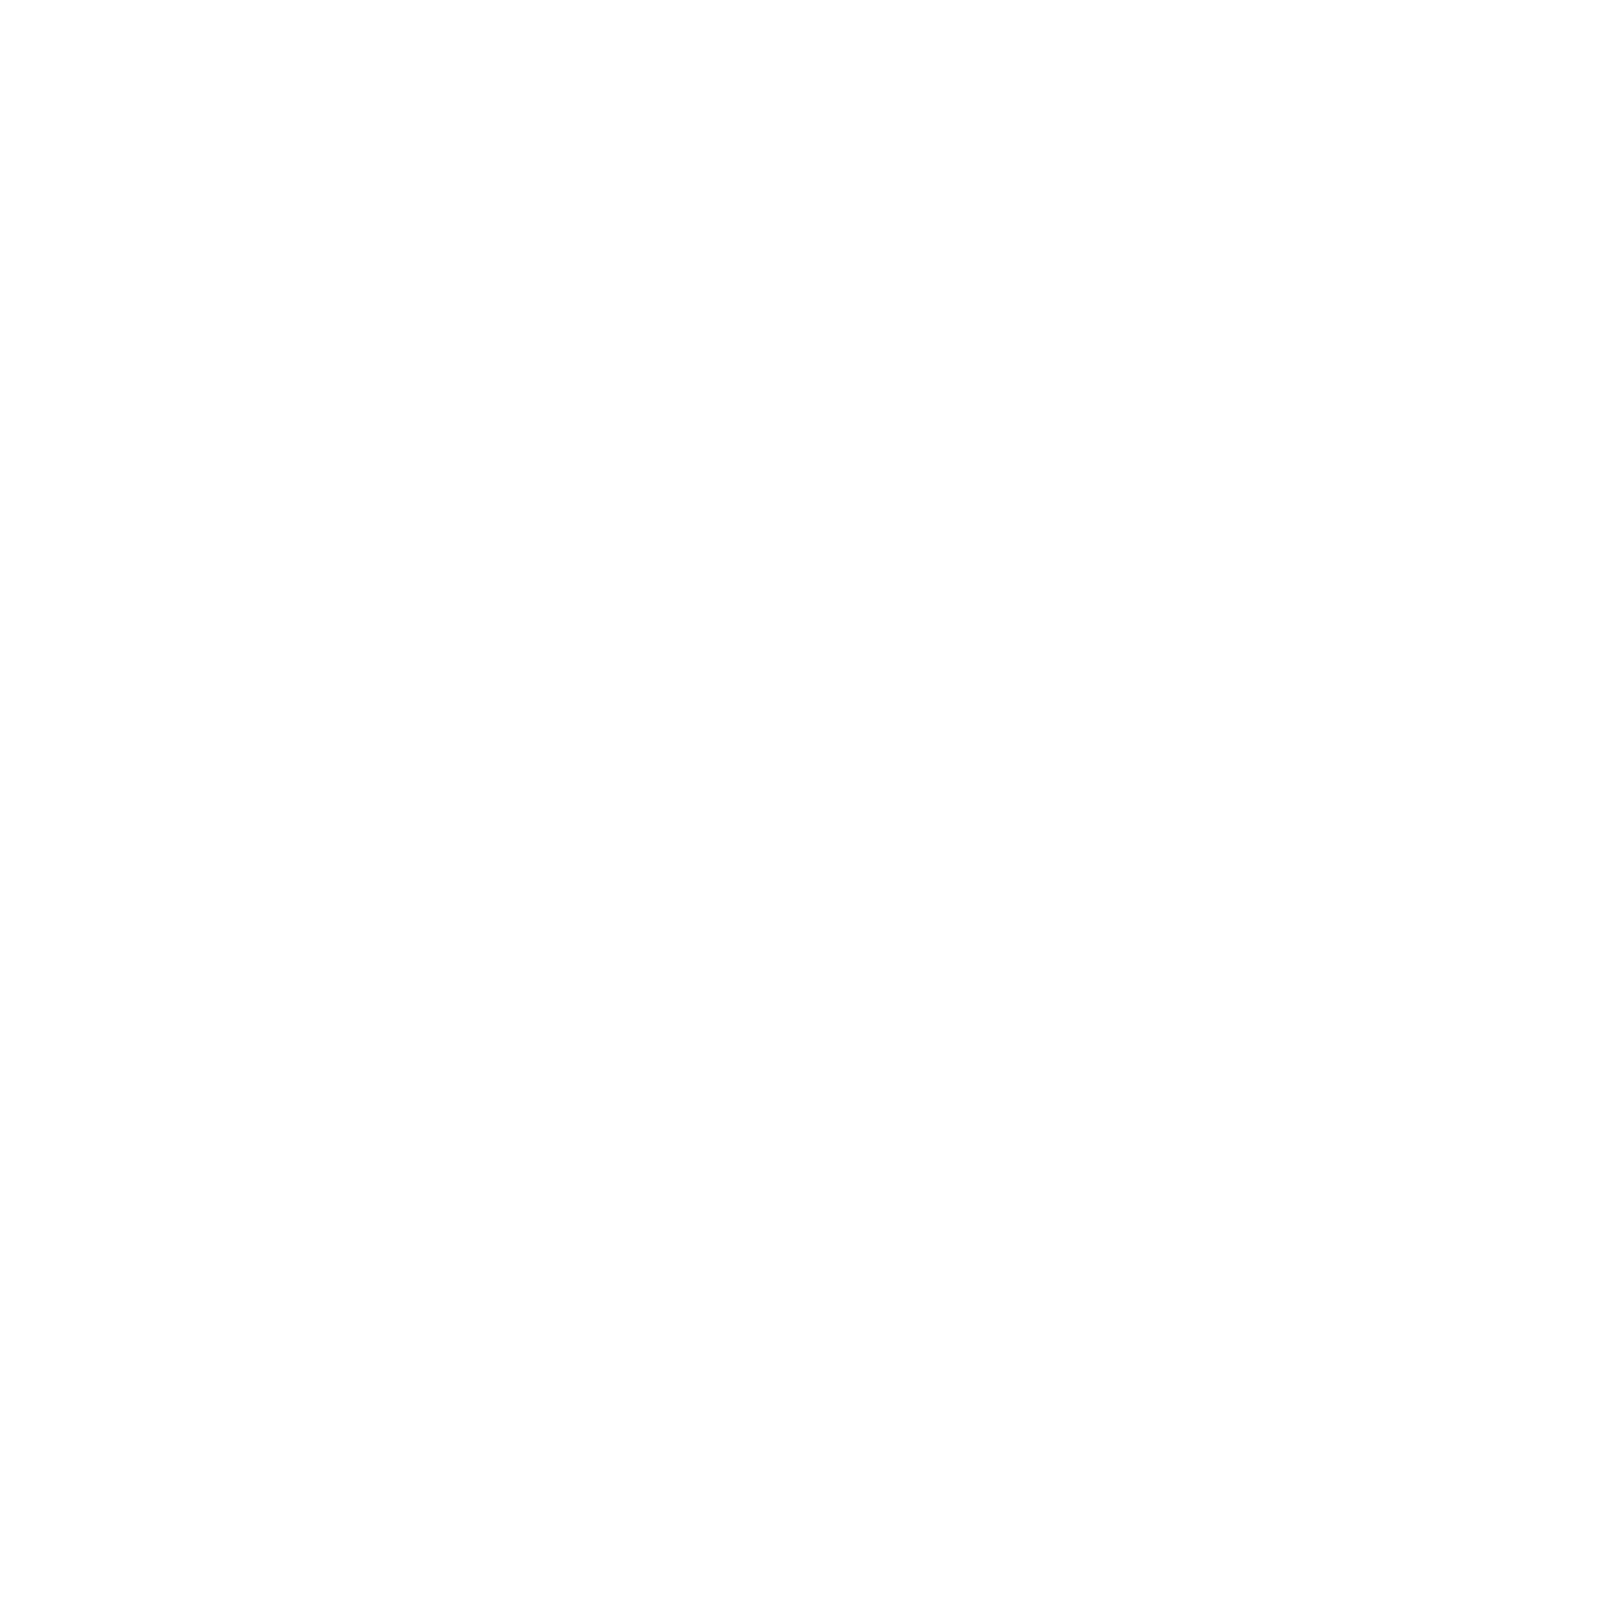 Sculpt Design Studio - Best Interior Designers in Delhi logo